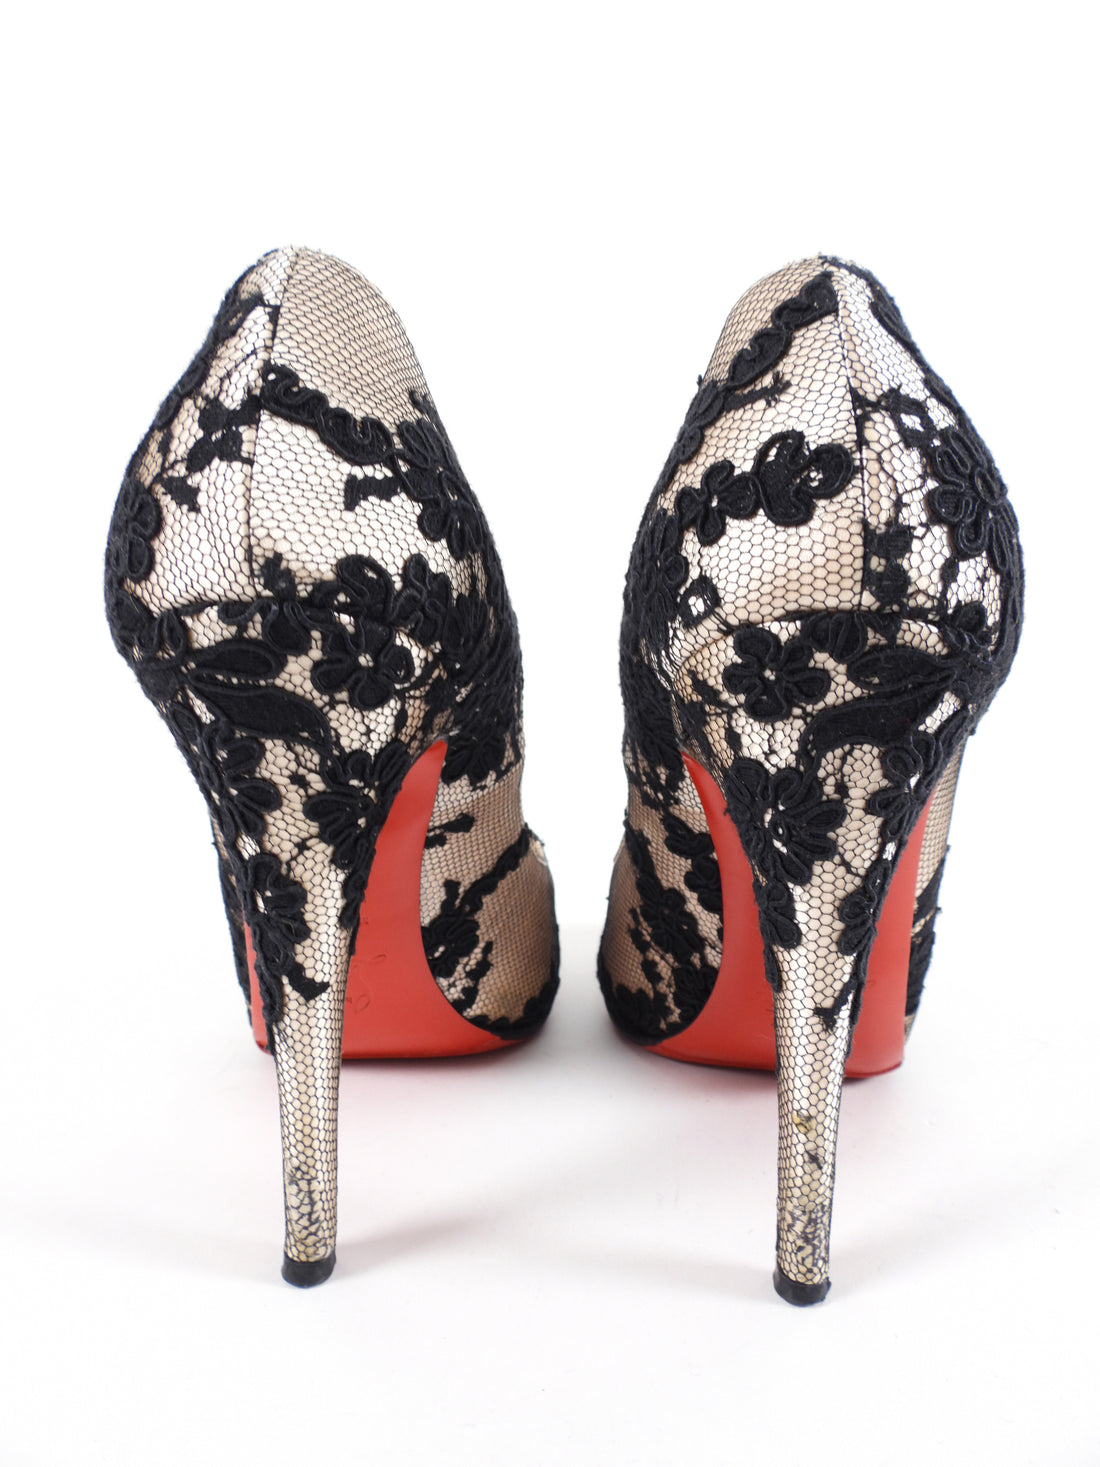 DSW Heels: Shop Trendy Heels for Every Occasion | DSW